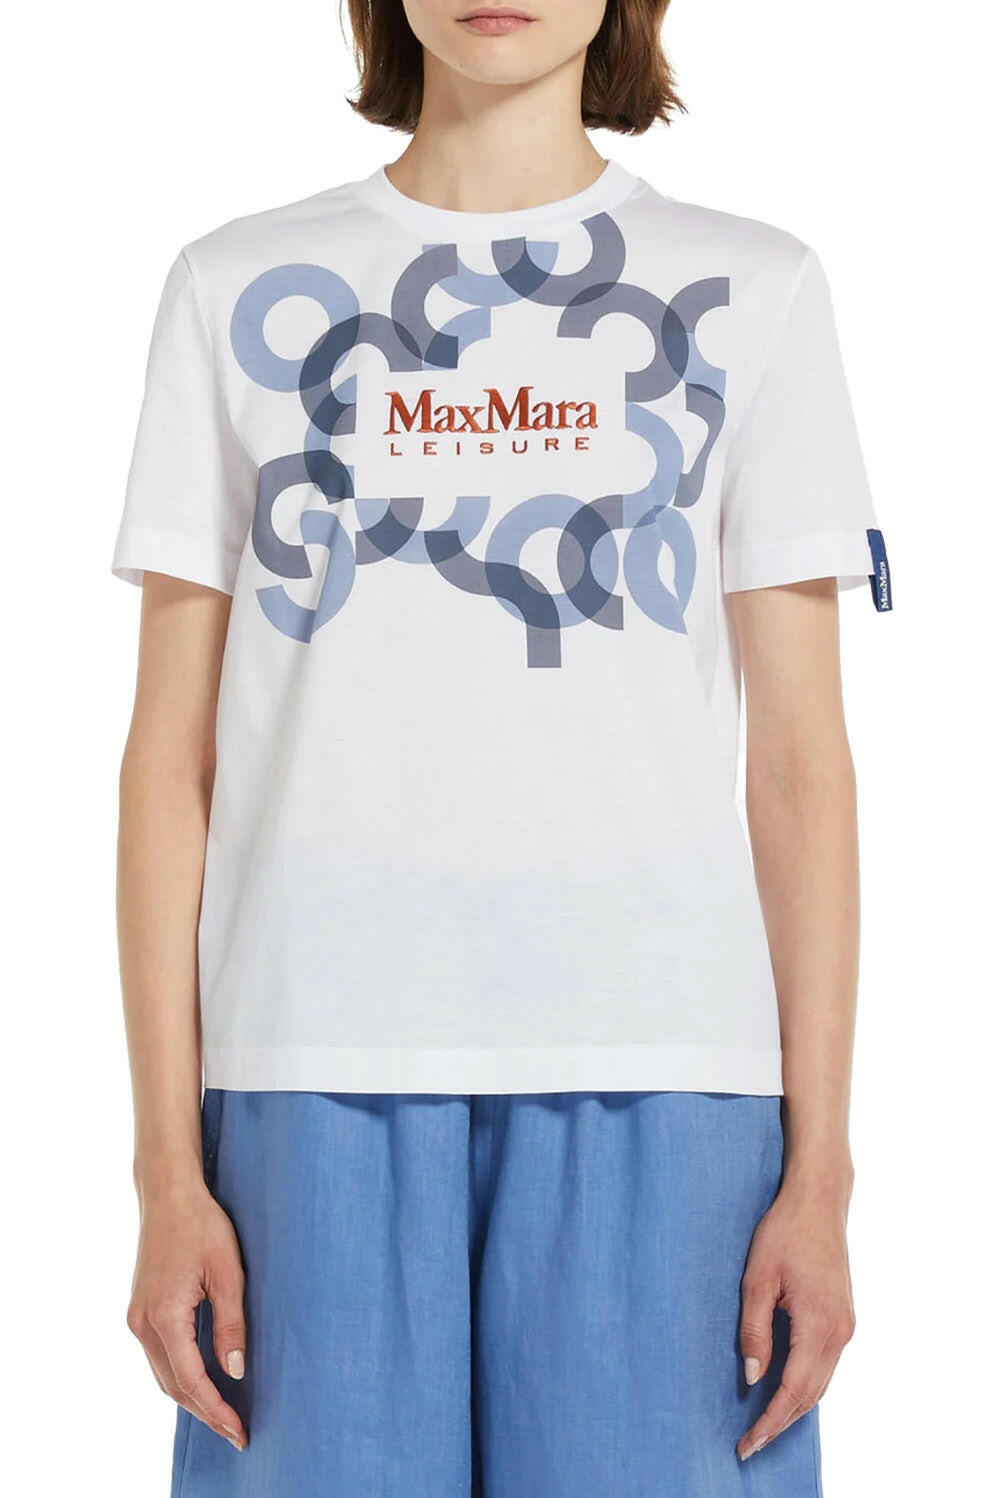  Max Mara T-shirt Obliqua Donna - 2